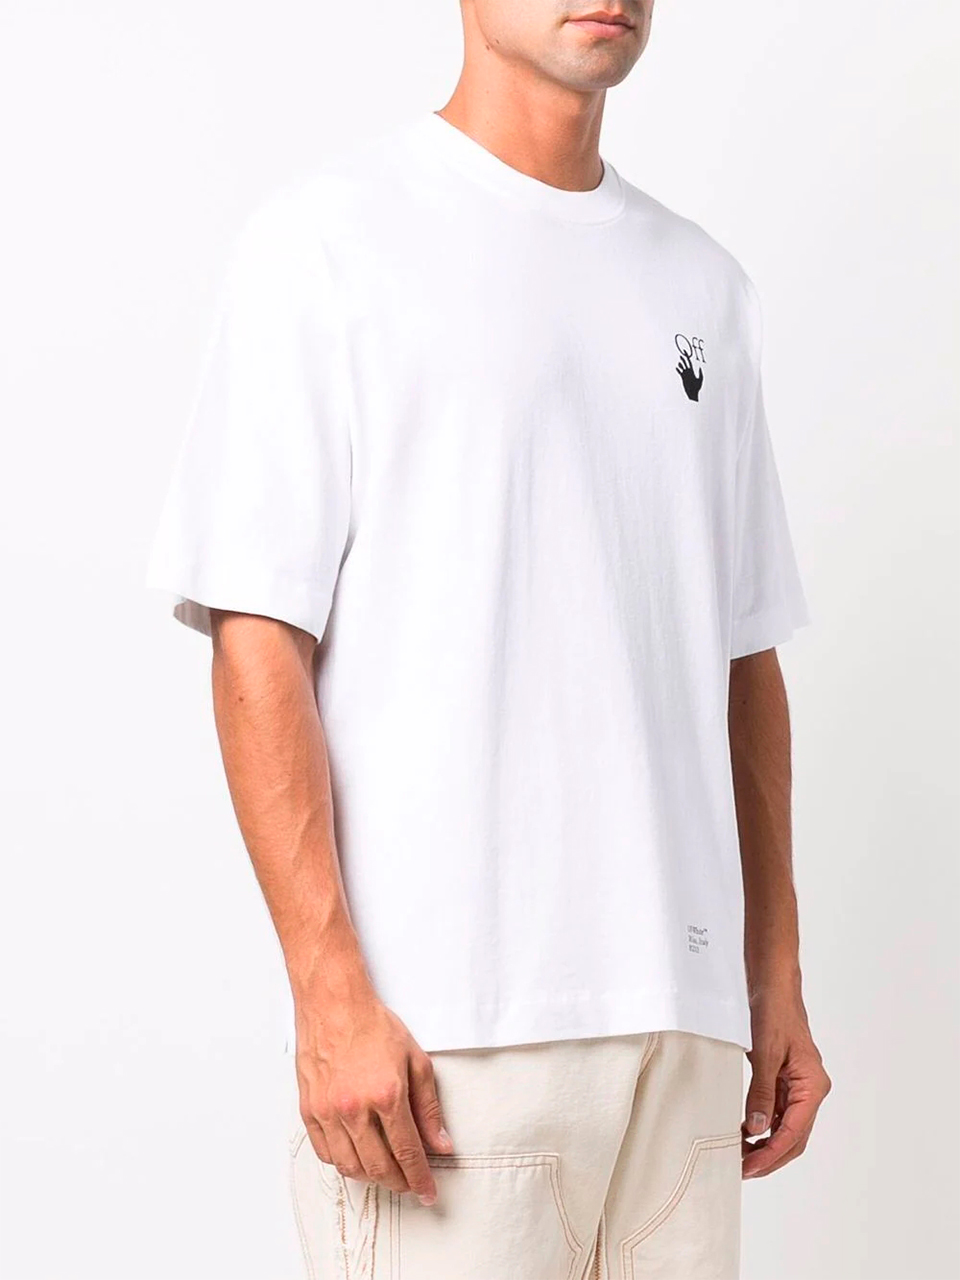 Imagem de: Camiseta Off-White Branca com Estampa Setas Caravaggio